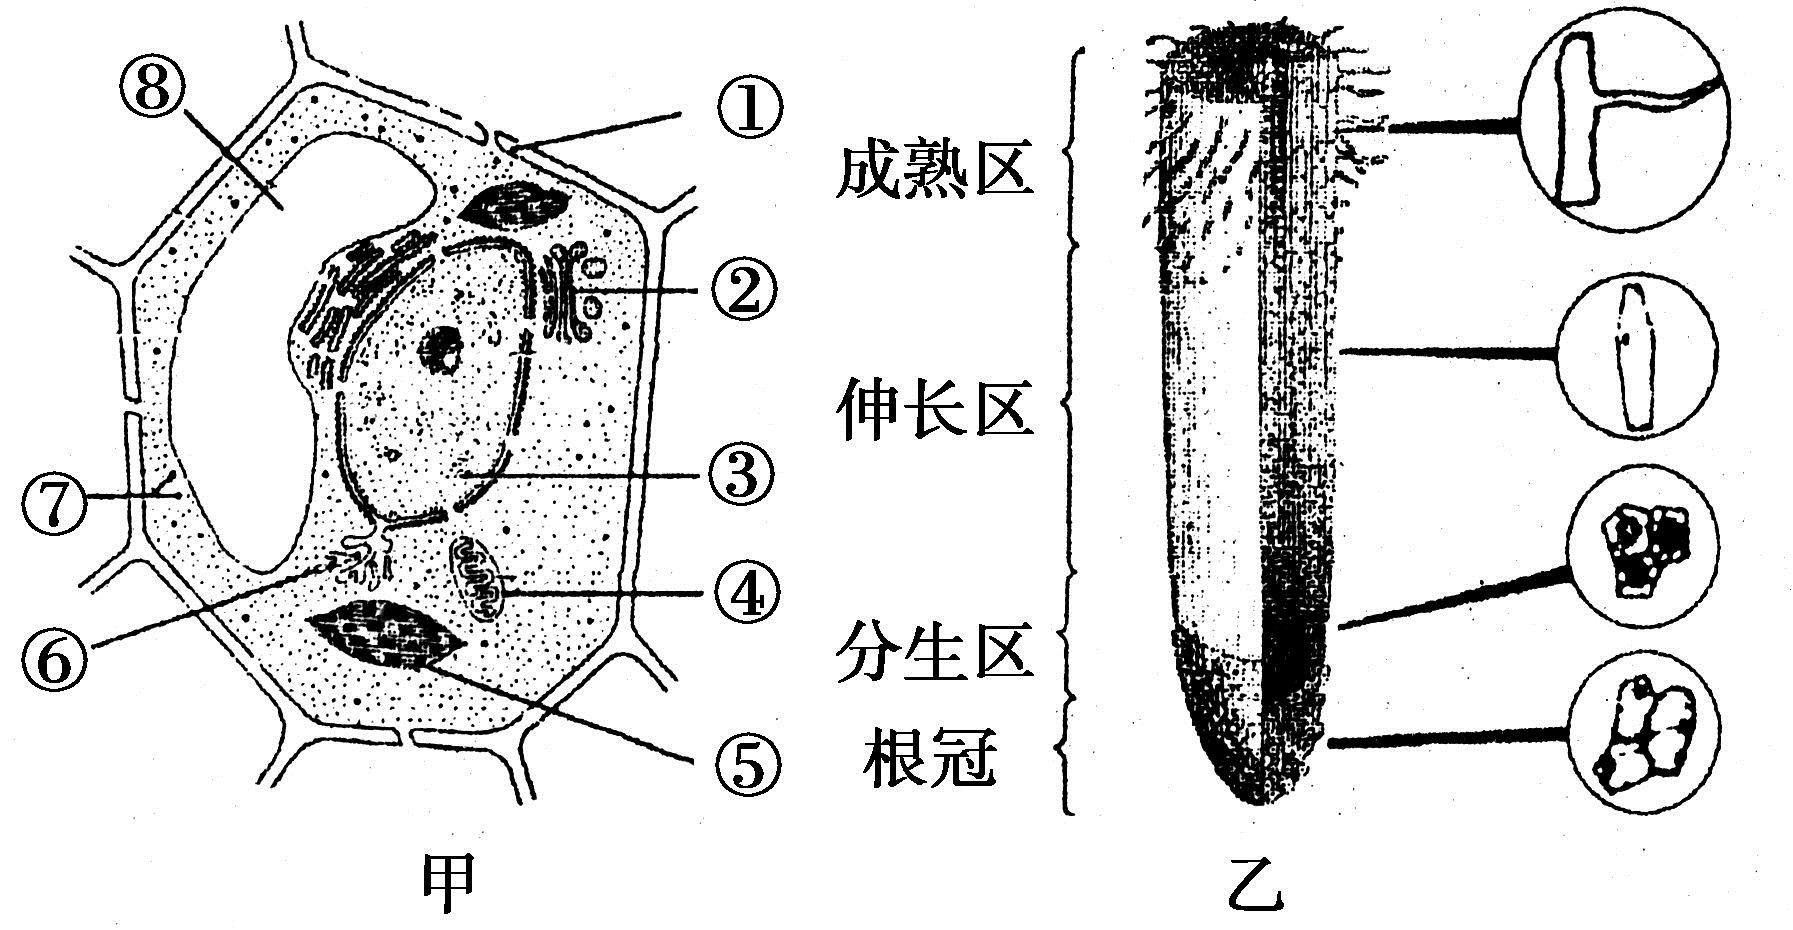 2,茎的组成及用途 导管(在木质部运输水分,无机盐),筛管(在韧皮部运输